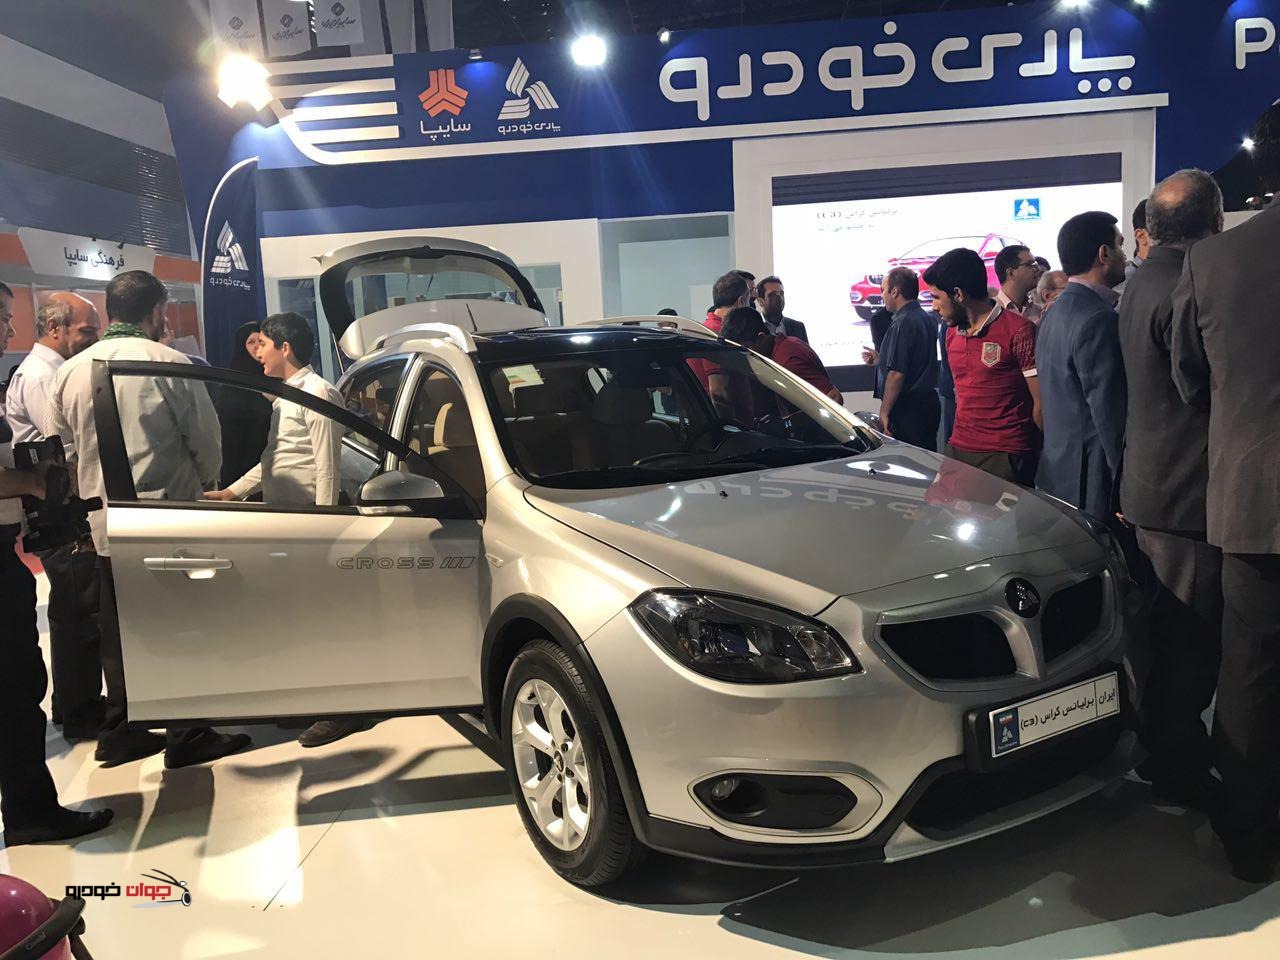 گزارش نمایشگاه خودرو مشهد (6) / پارس خودرو از قیمت برلیانس C3 رونمایی کرد